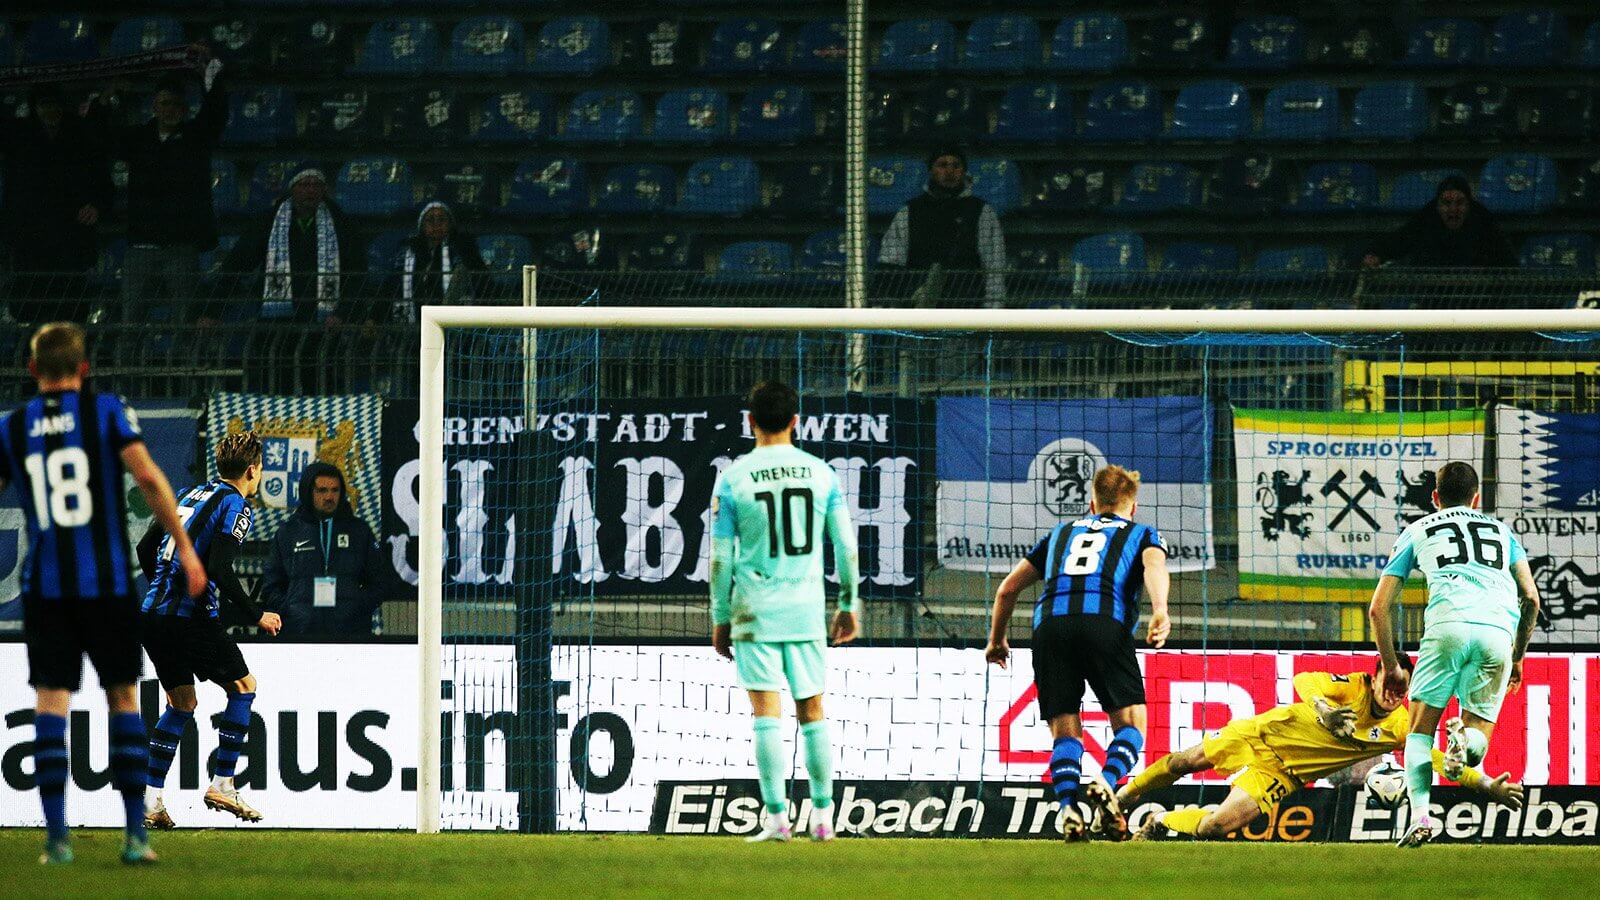  SV Waldhof - 1860 München. 1:0 für den SV Waldhof per Elfmeter, den Baxter Bahn (#7, SVW) verwandelt. Foto: IMAGO / MIS